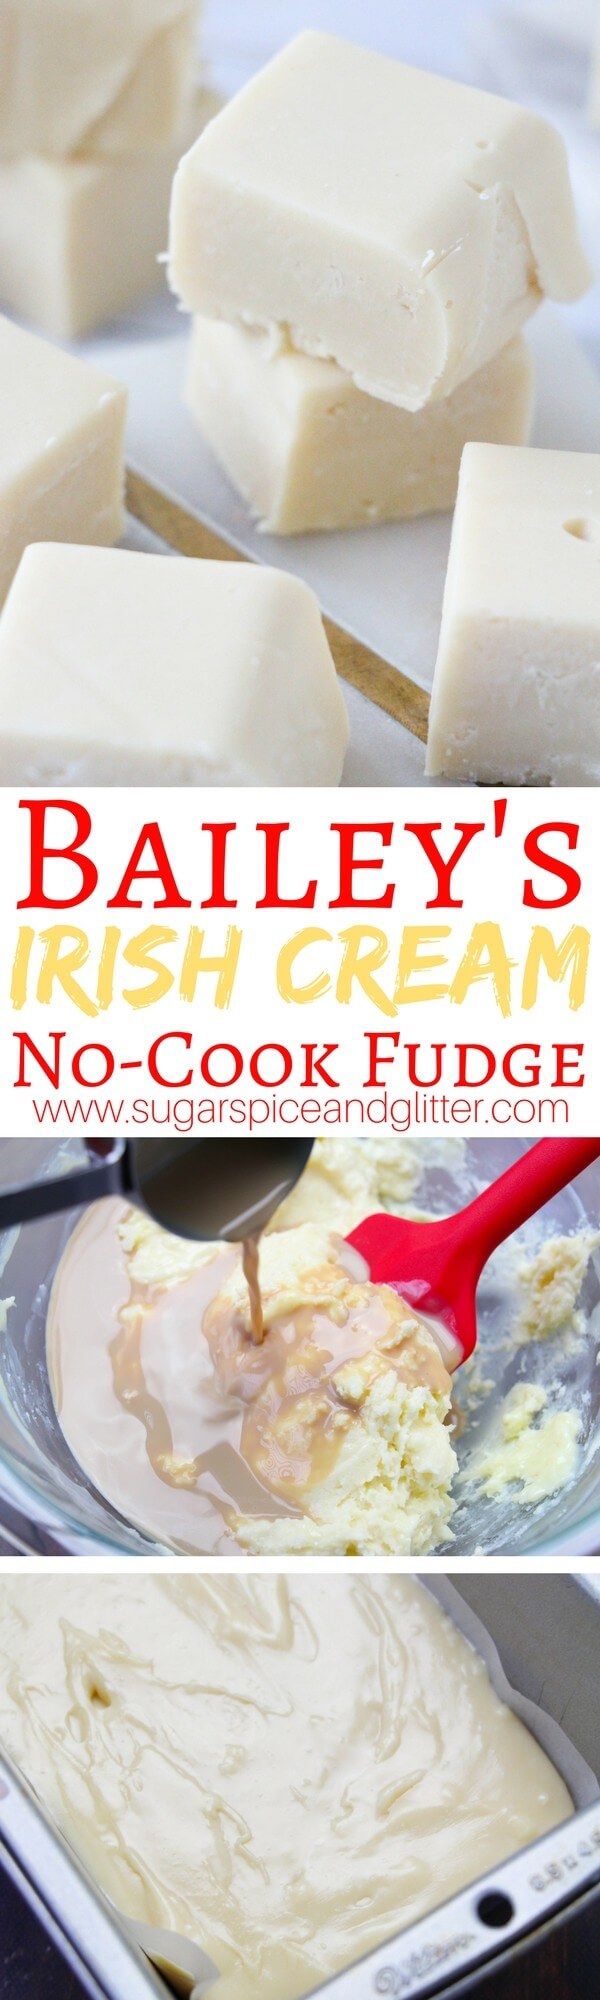 Bailey’s Irish Cream Fudge